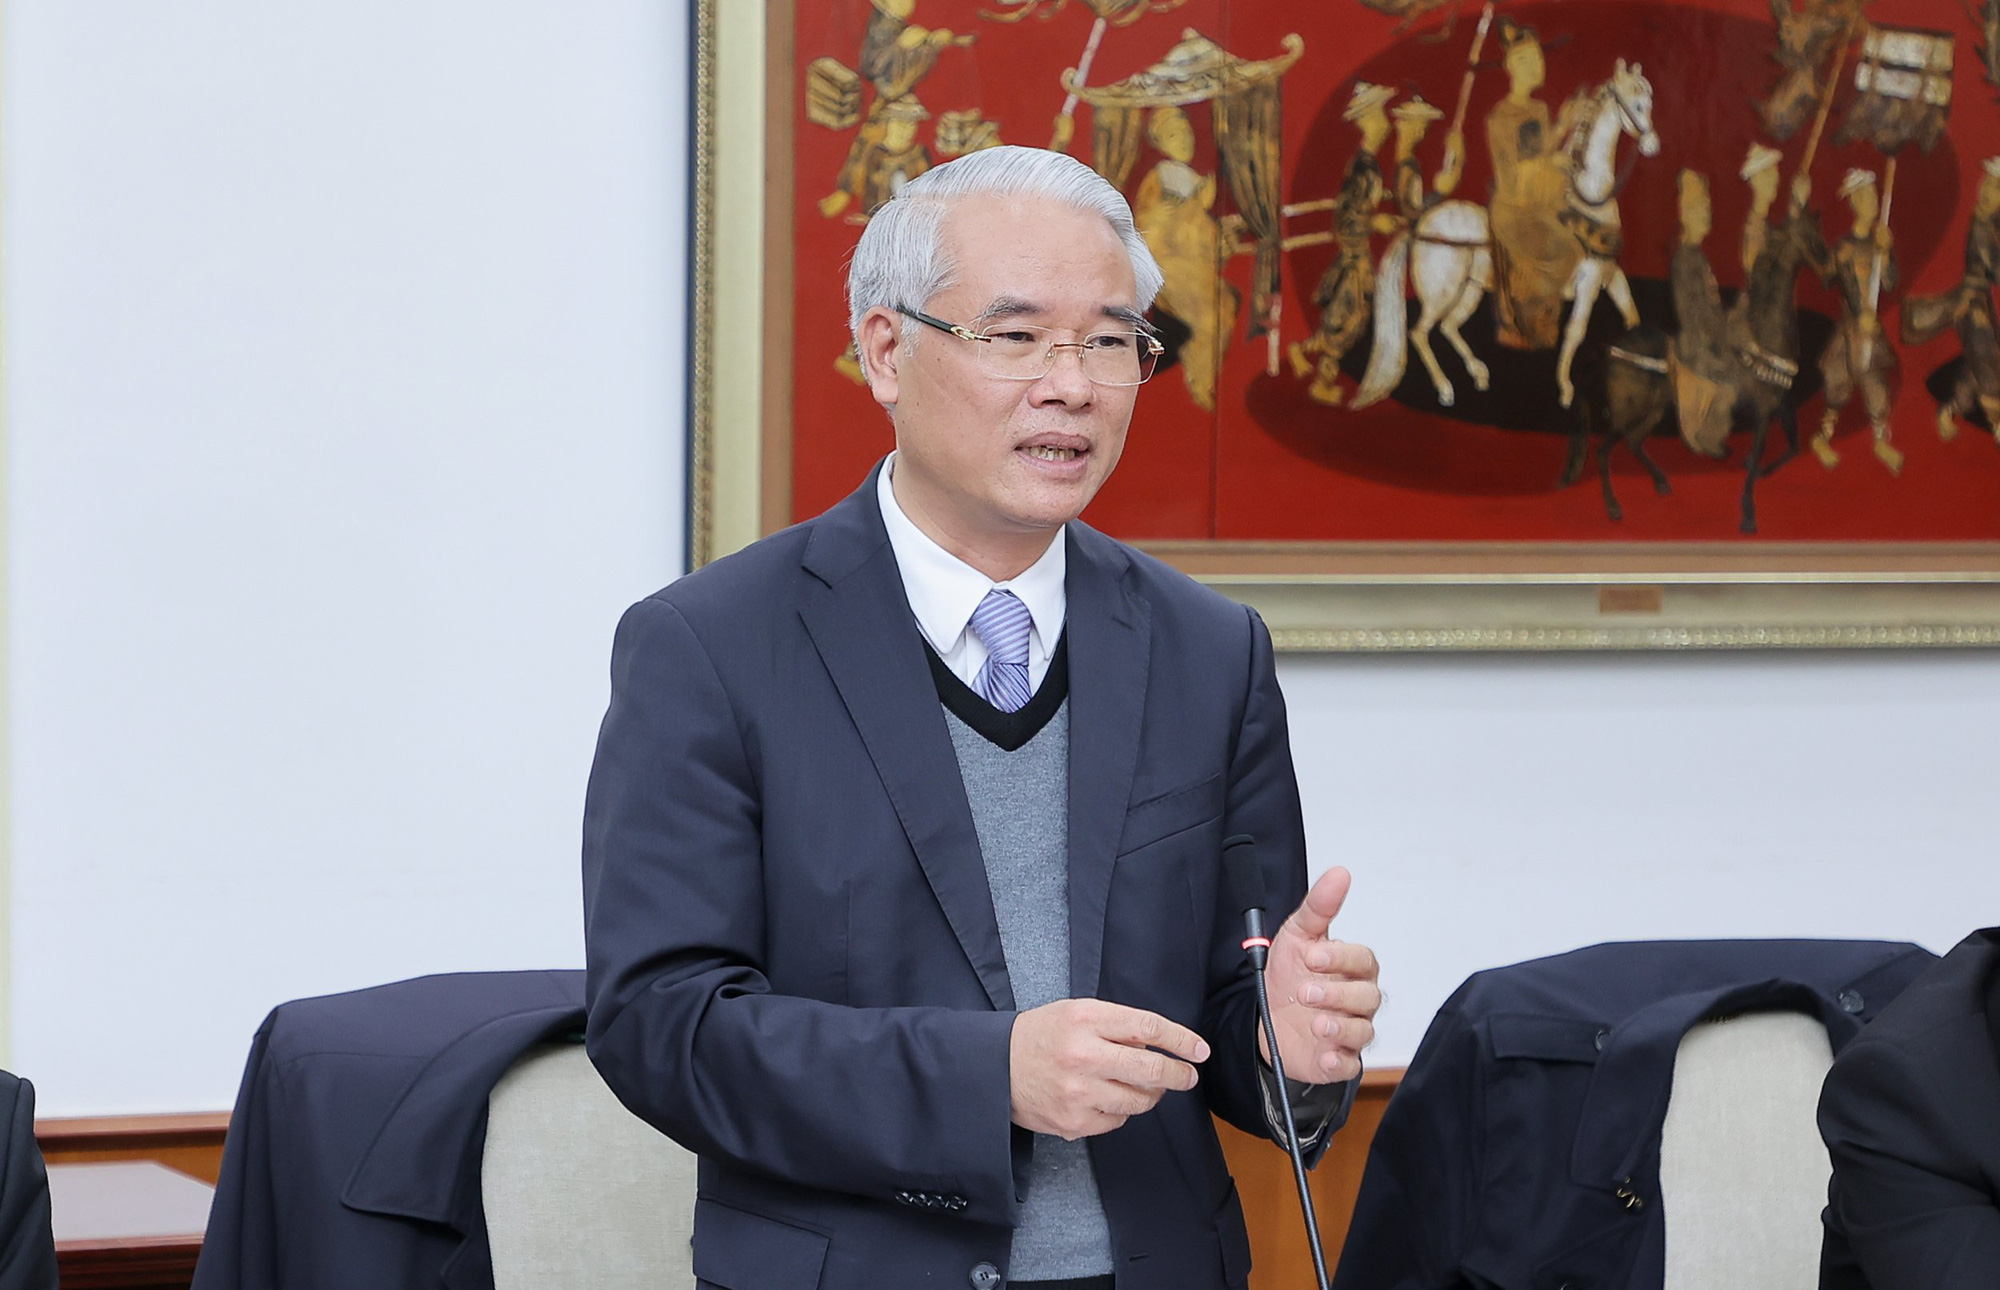 Bộ trưởng Nguyễn Văn Hùng: “Xây dựng pháp luật không chỉ là công cụ quản lý mà phải tạo ra động lực phát triển” - Ảnh 6.